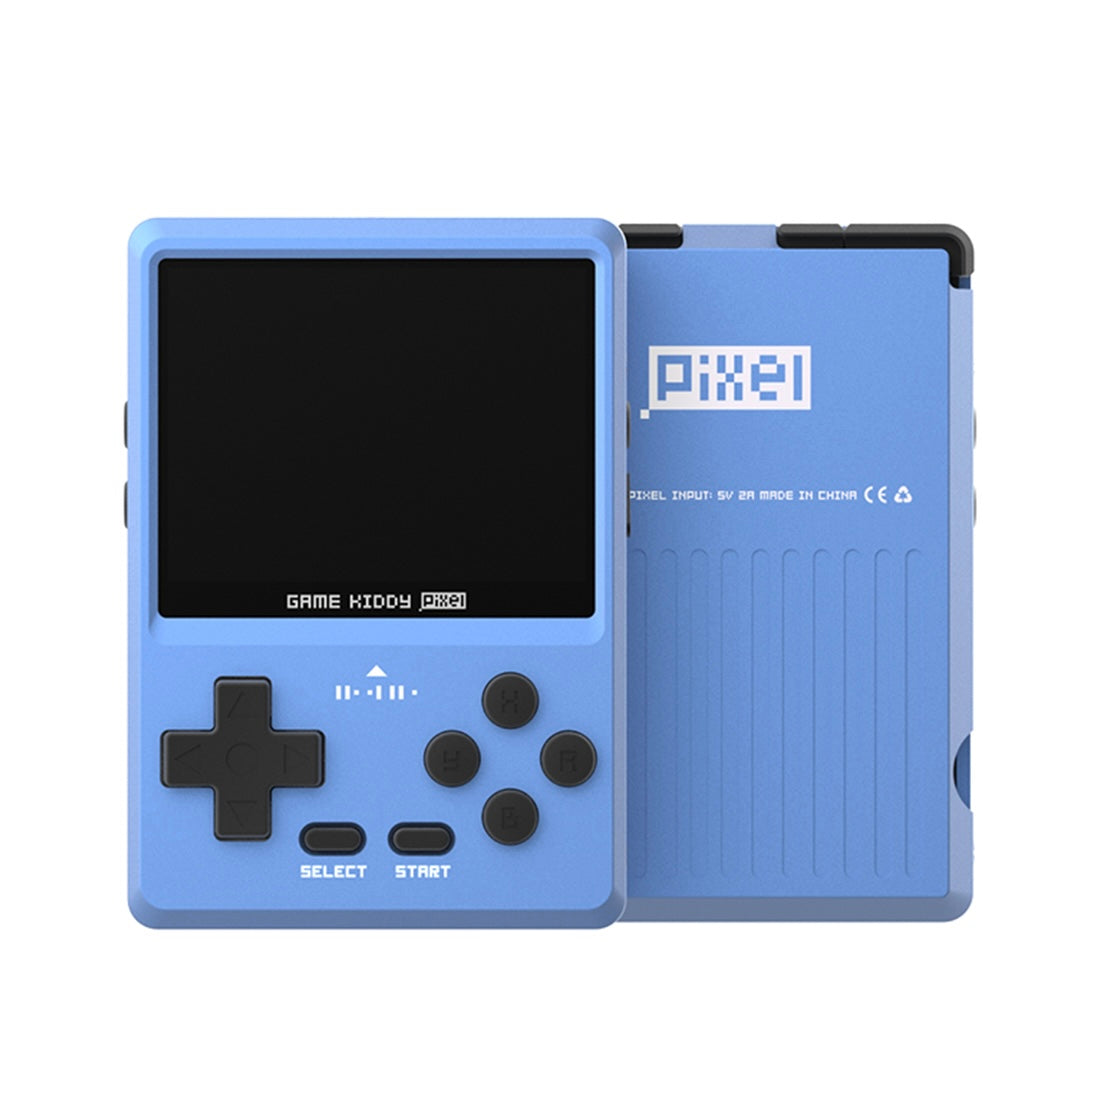 gkd-pixel-metal-retro-game-console-blue1.jpg__PID:6da16a94-82d0-4b97-a018-9211687447af